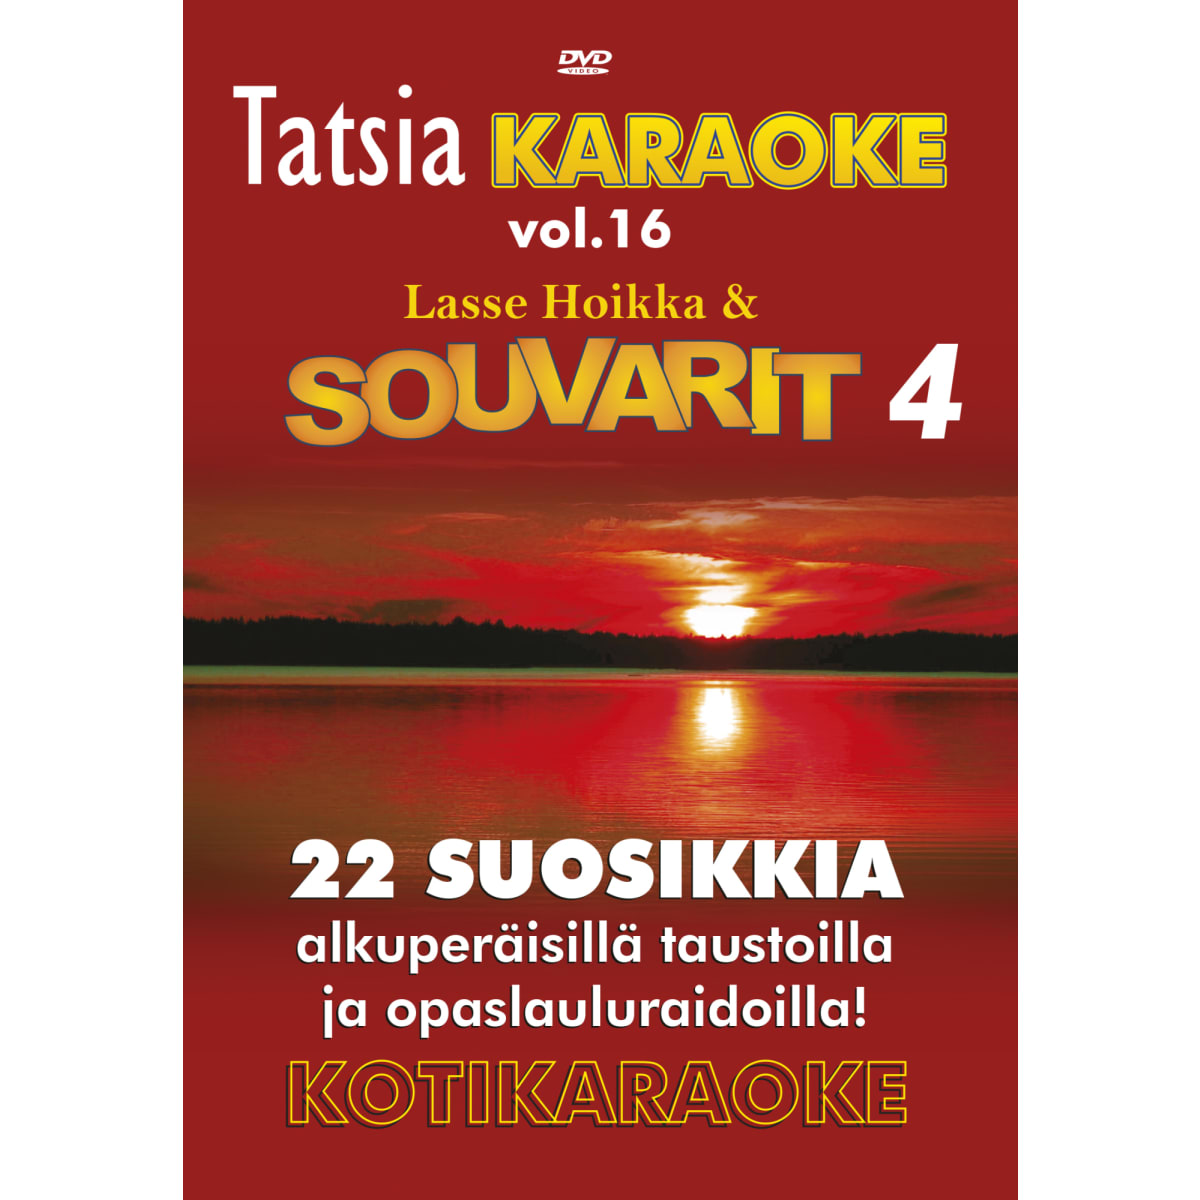 Tatsia Souvarit 4 karaoke DVD  verkkokauppa